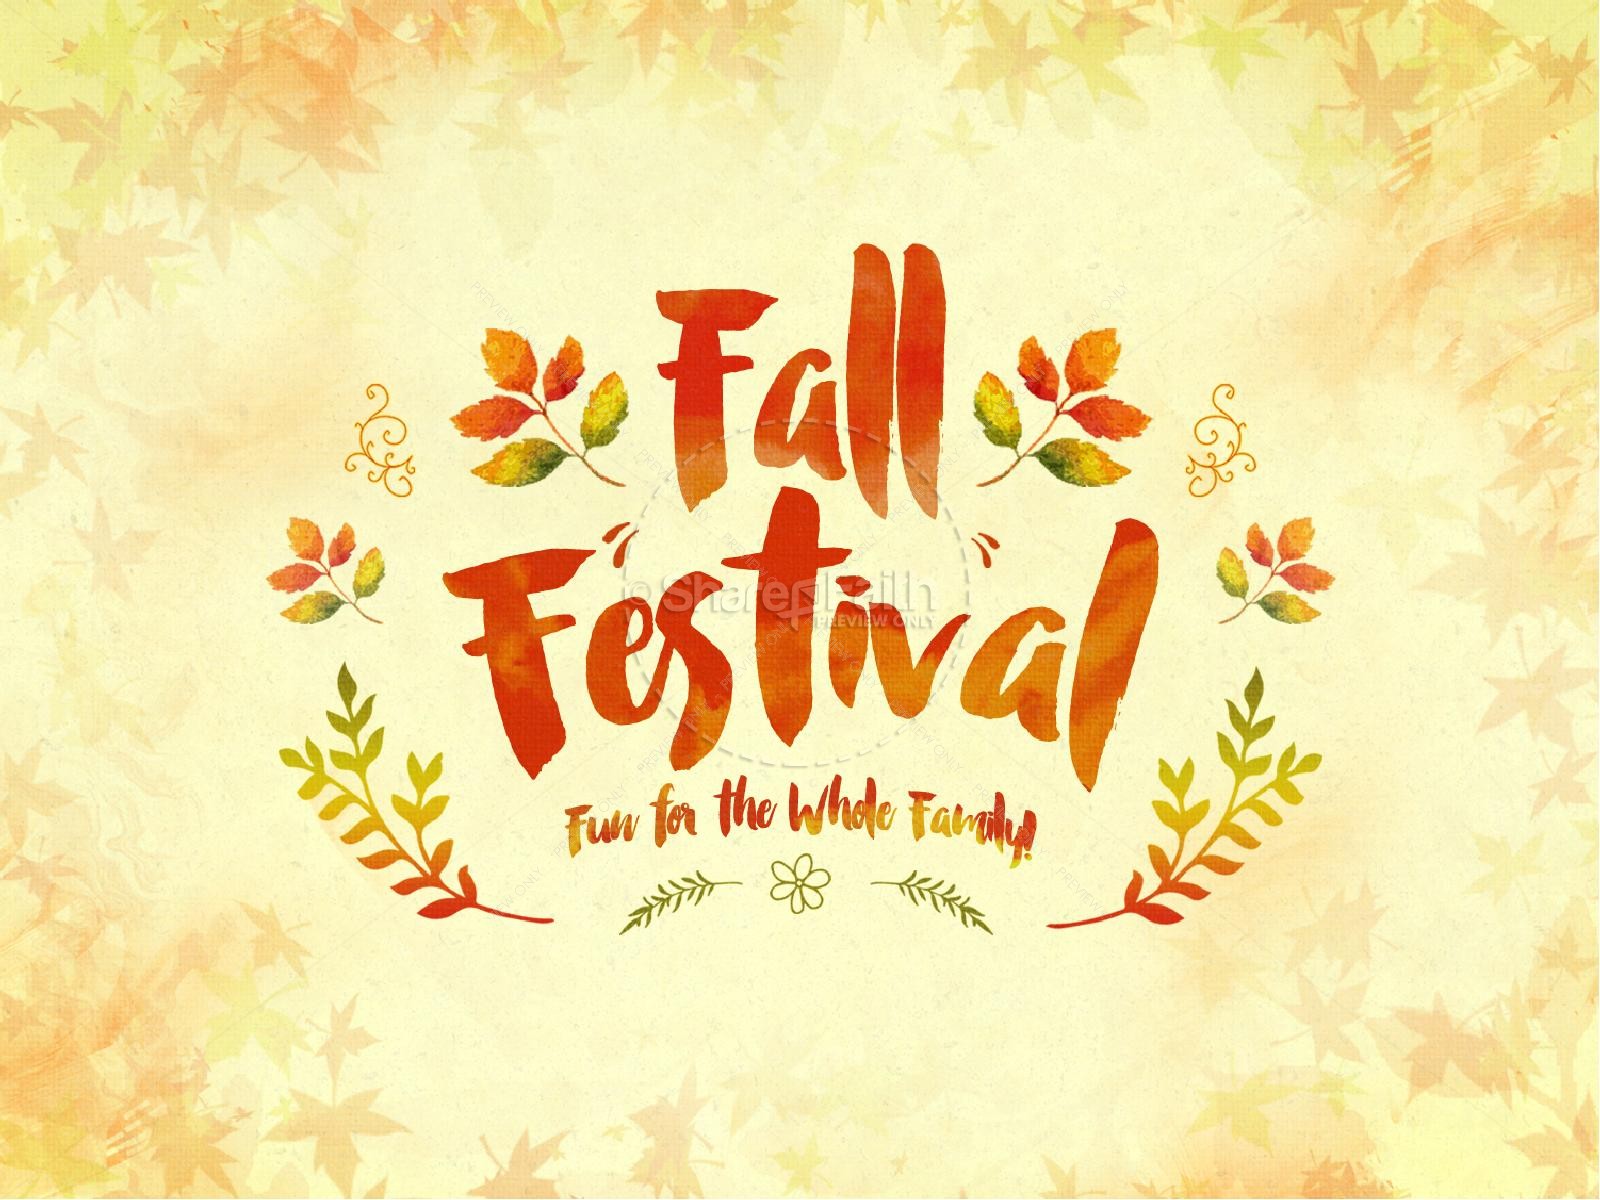 Fall Festival Family Fun Religious PowerPoint